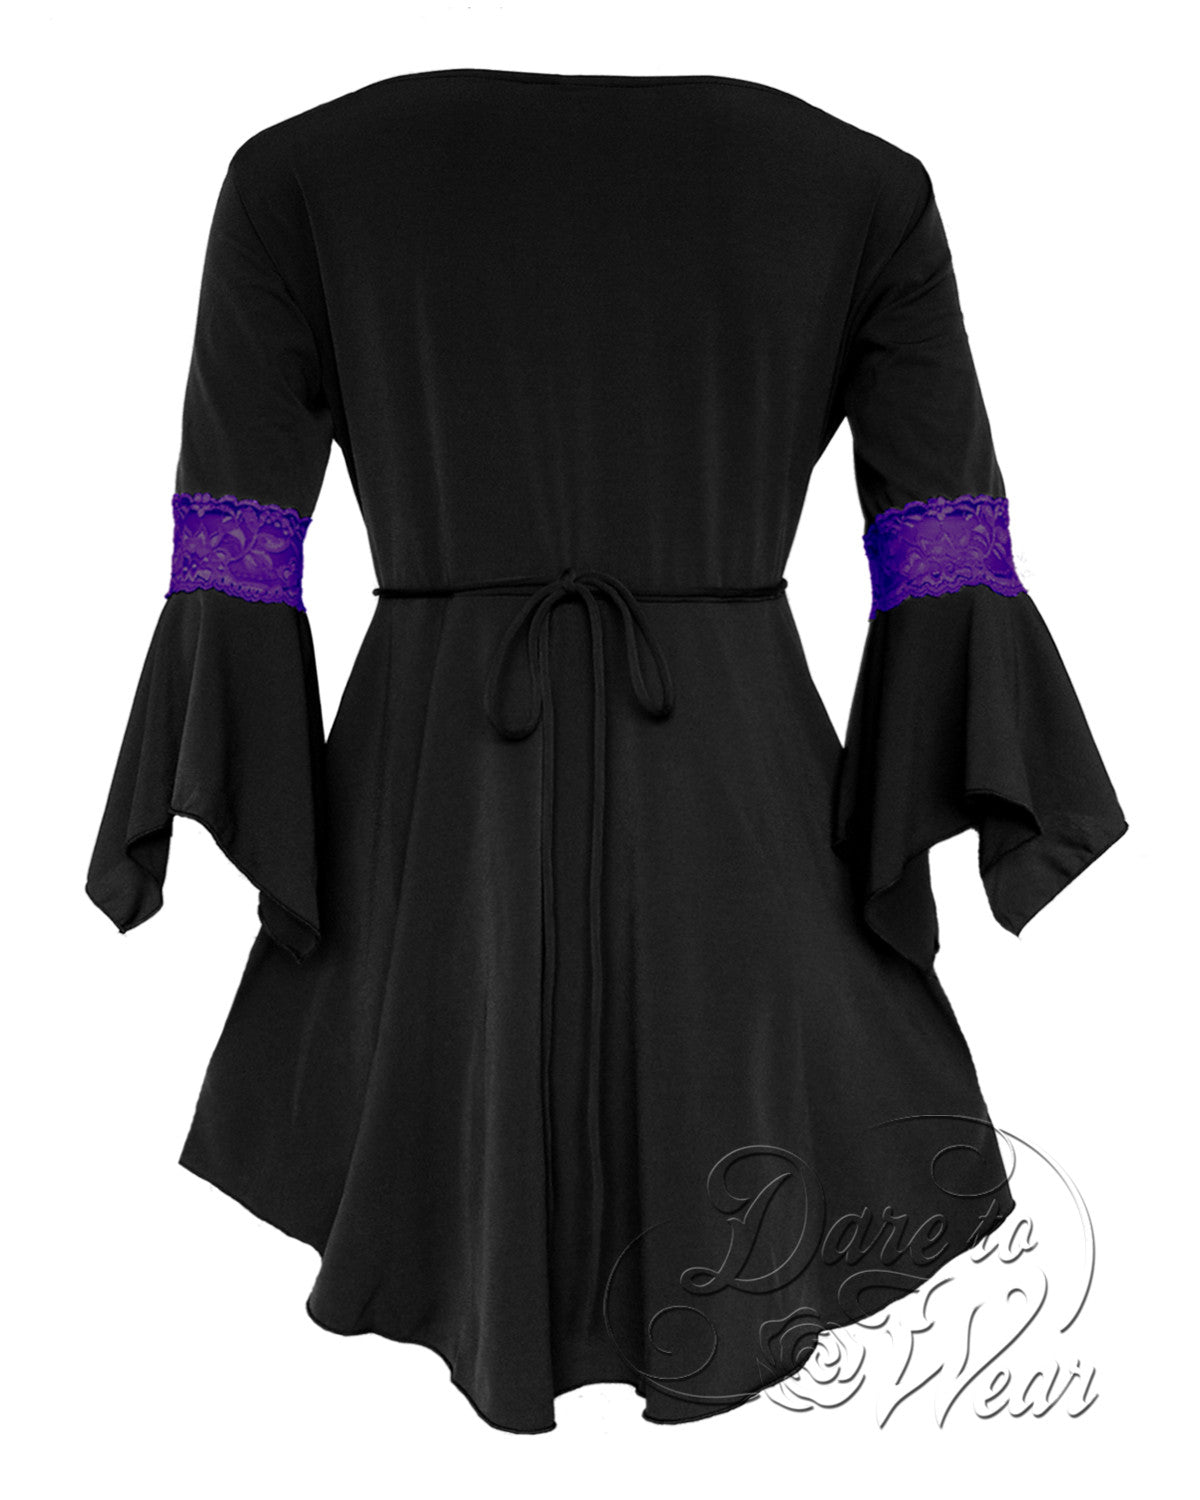 Regal Renaissance Revival: Enchanting Purple Gothic Corset Dress